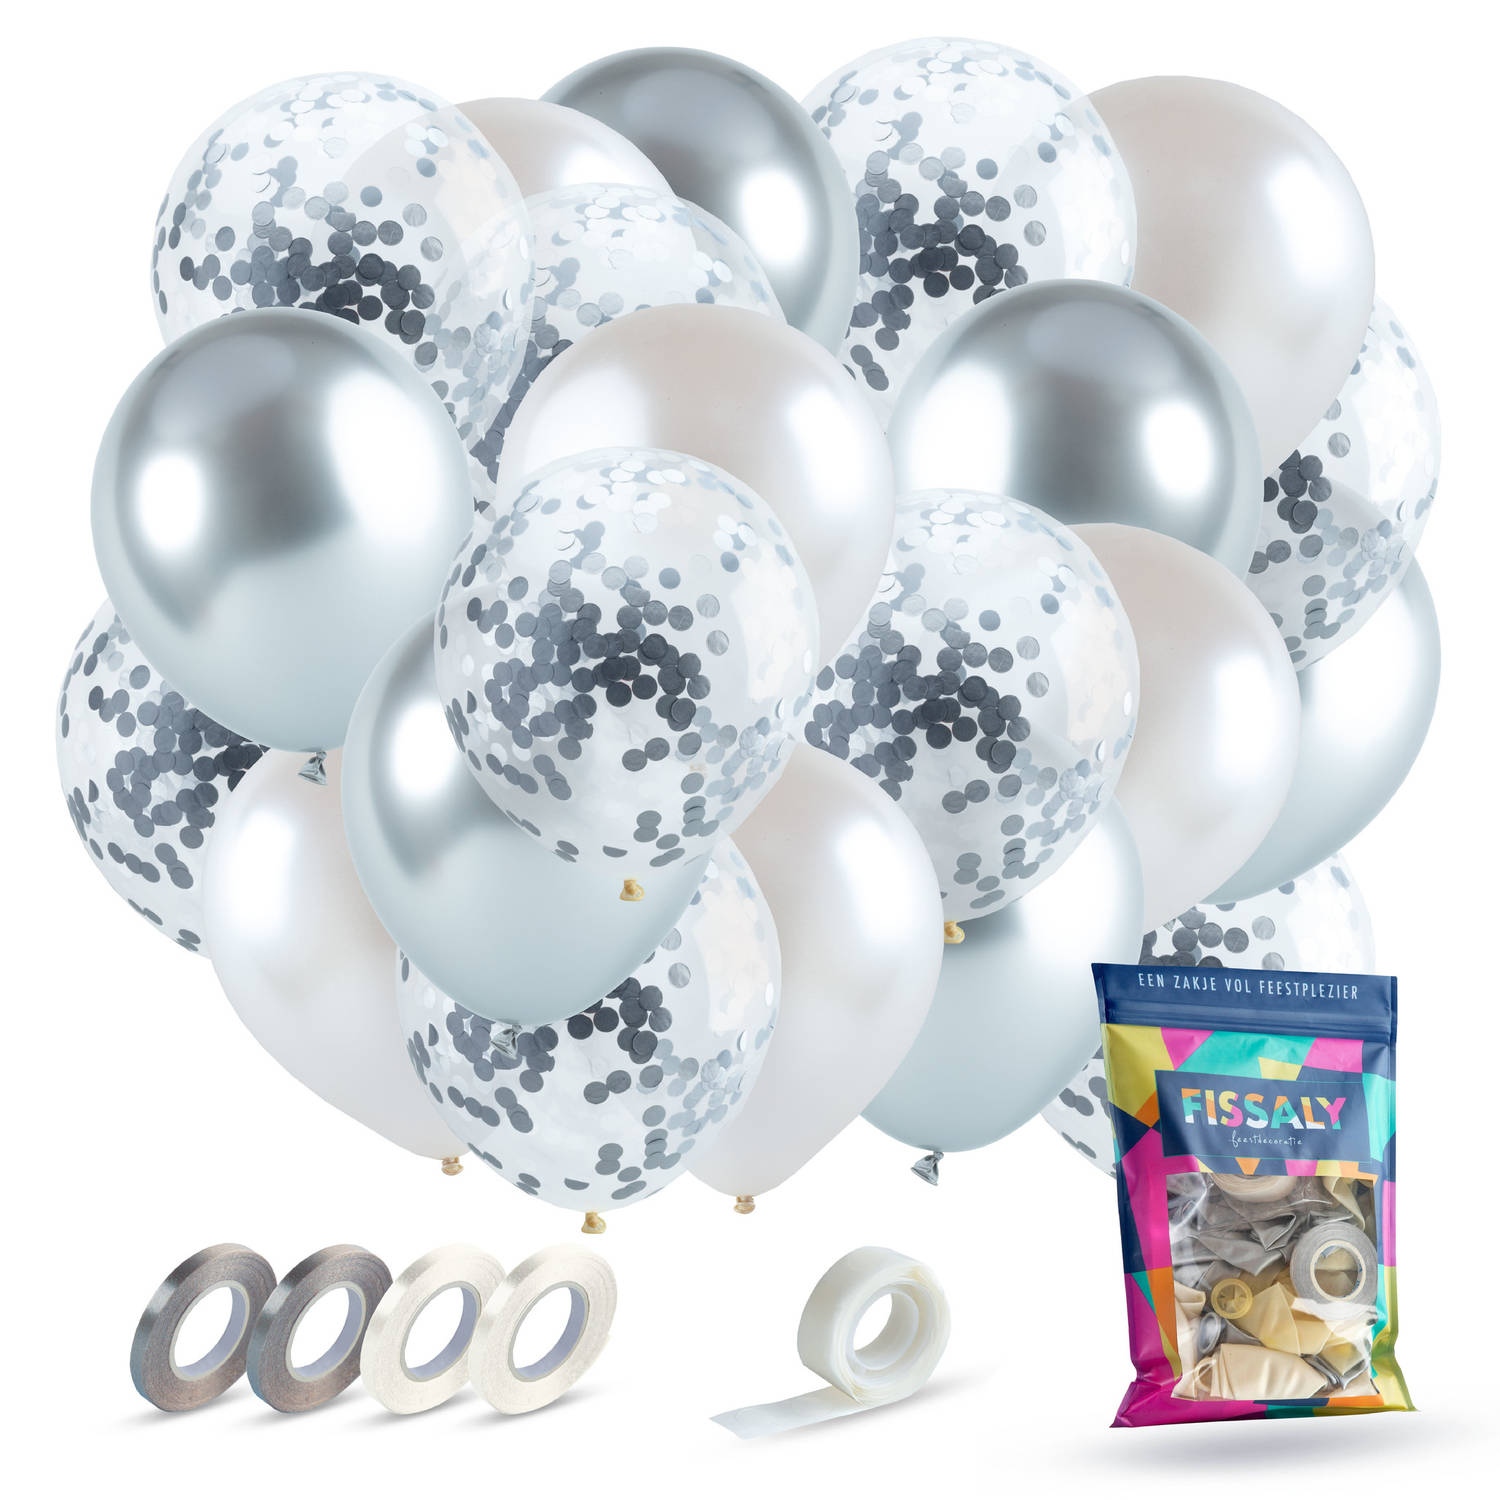 Fissaly® 40 stuks Zilver, Wit & Zilveren Papieren Confetti Helium Latex Ballonnen met Accessoires - Metallic Chrome